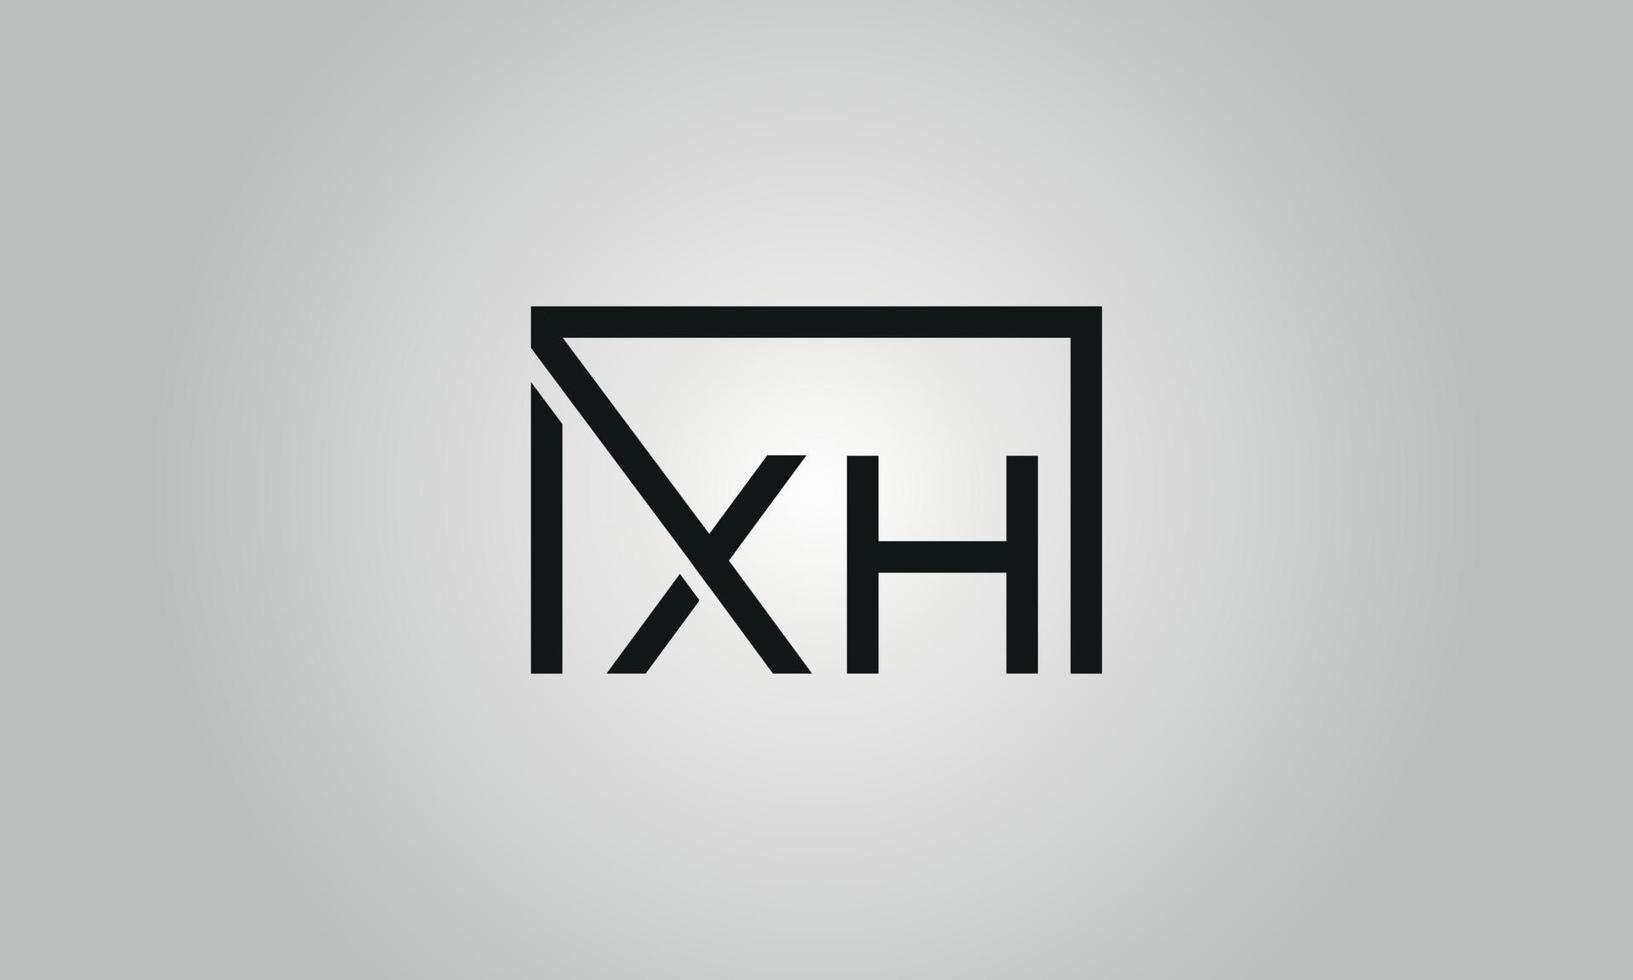 design de logotipo letra xh. xh logotipo com forma quadrada em cores pretas modelo de vetor livre.